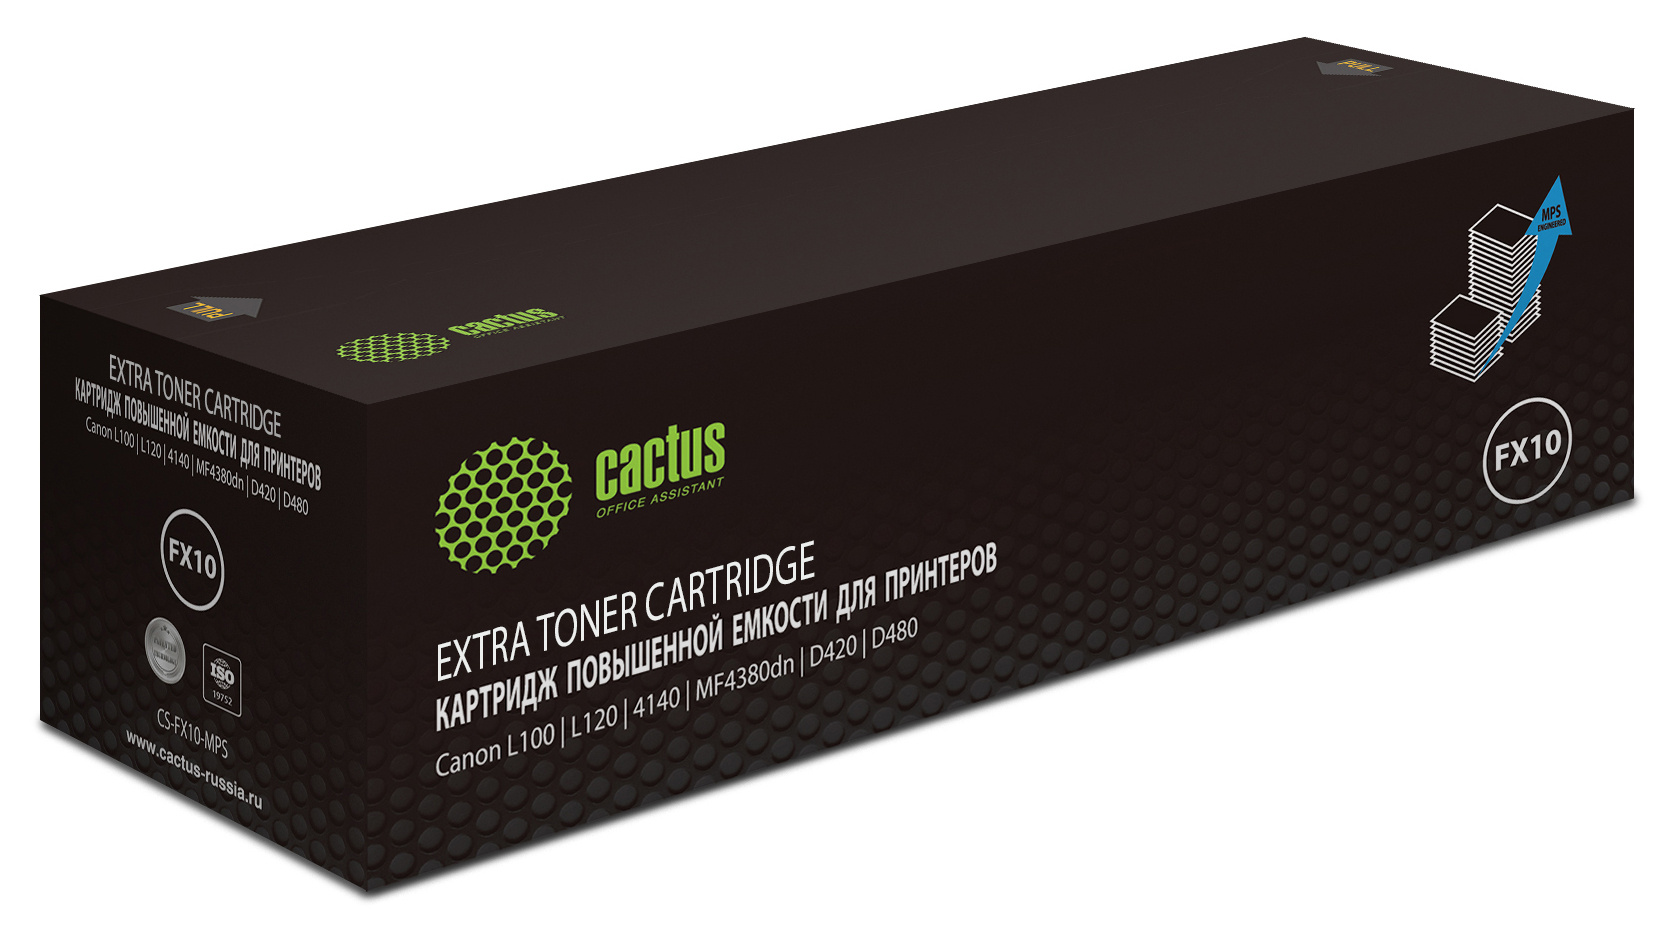   Cactus CS-FX10-MPS FX-10X  (3000.)  Canon L100/L120/4140/MF4380dn/D420/D480